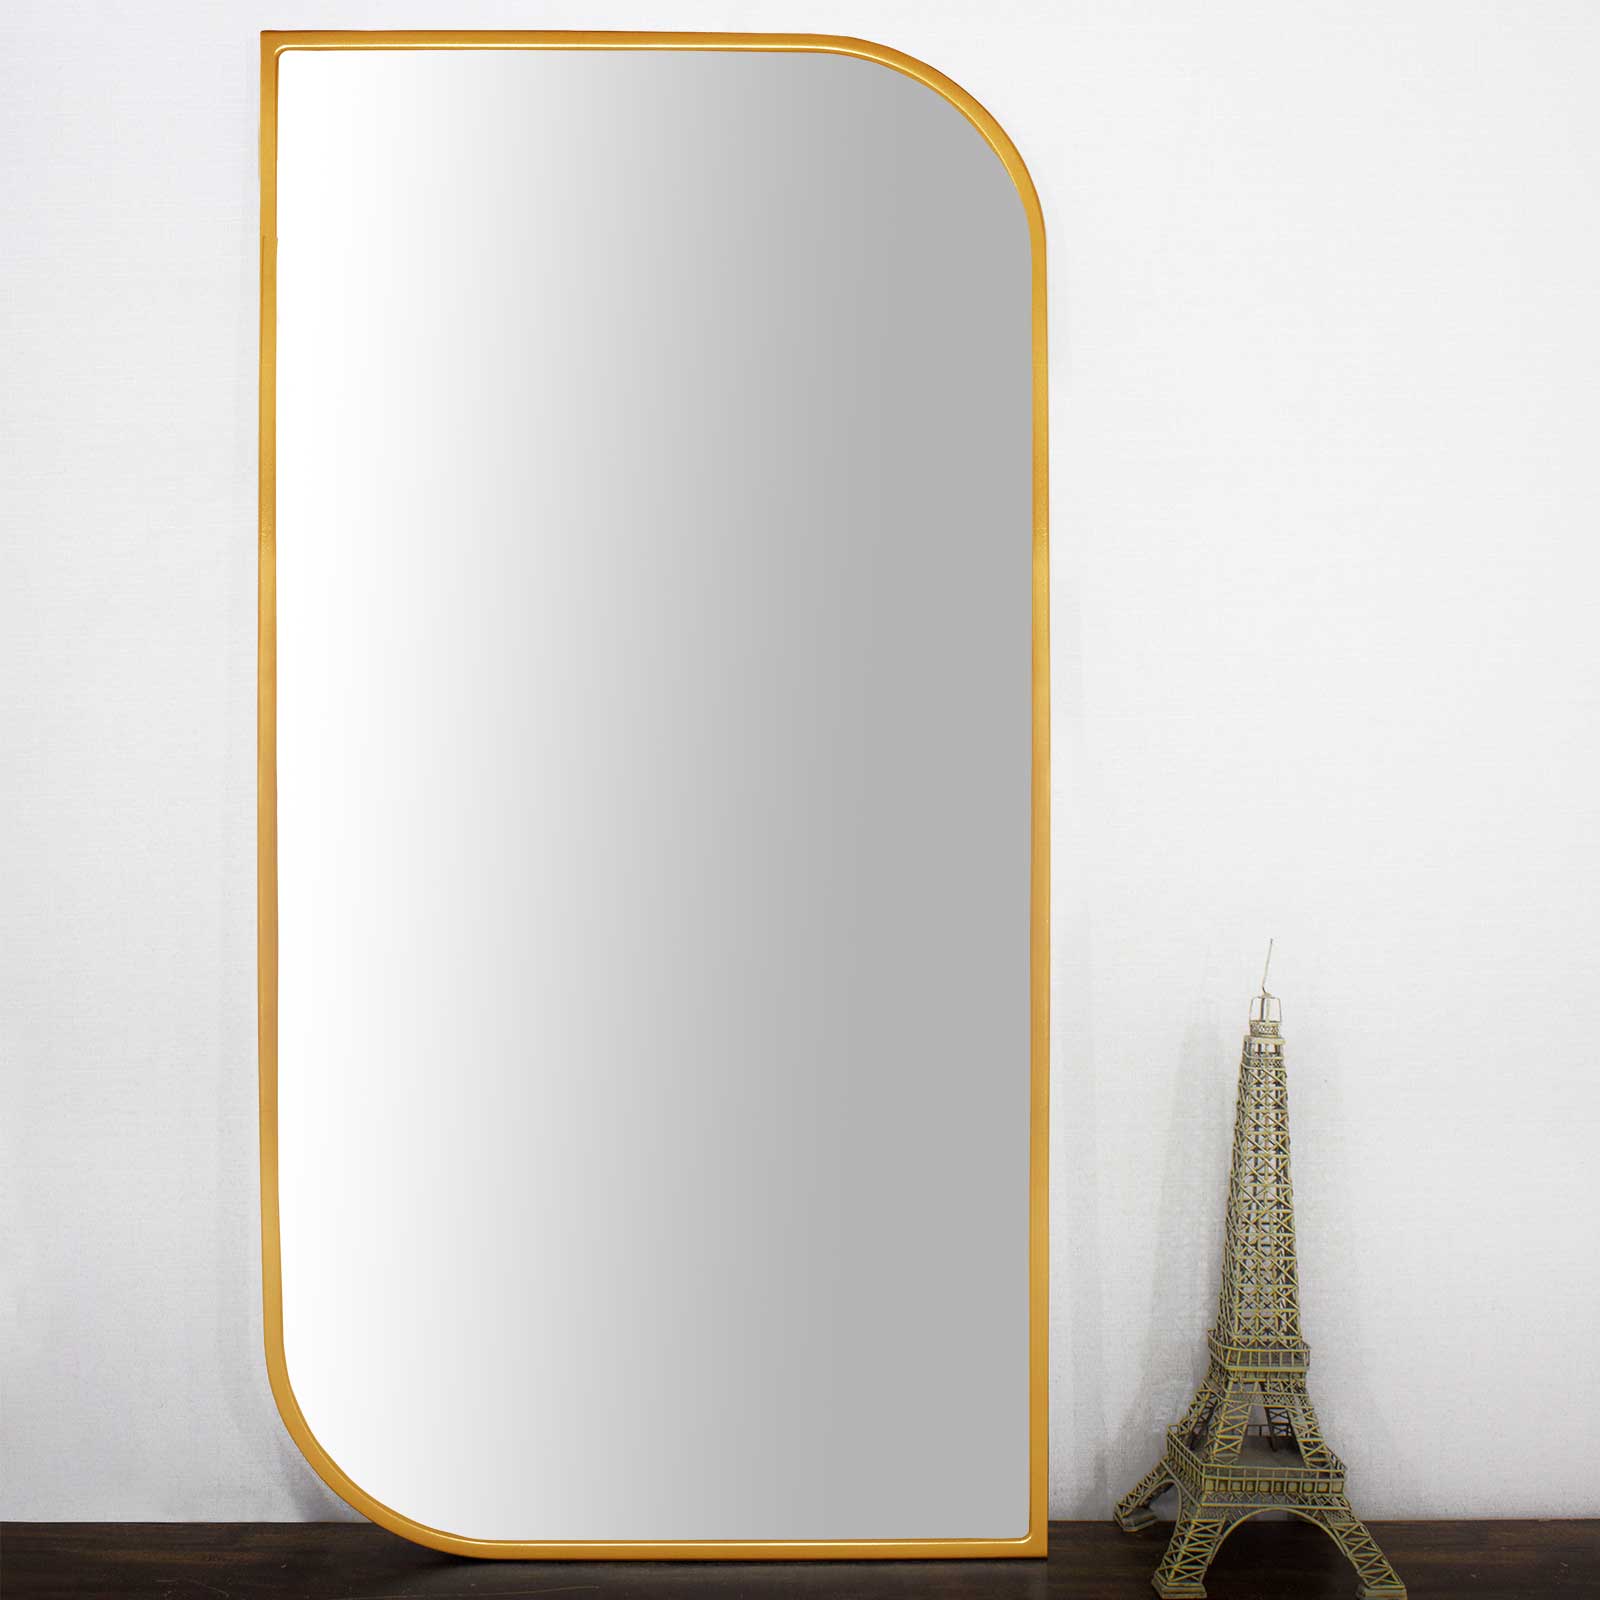 Moldura Design Mdf Laqueada Dourada Brilho para Espelhos V�rias Medidas